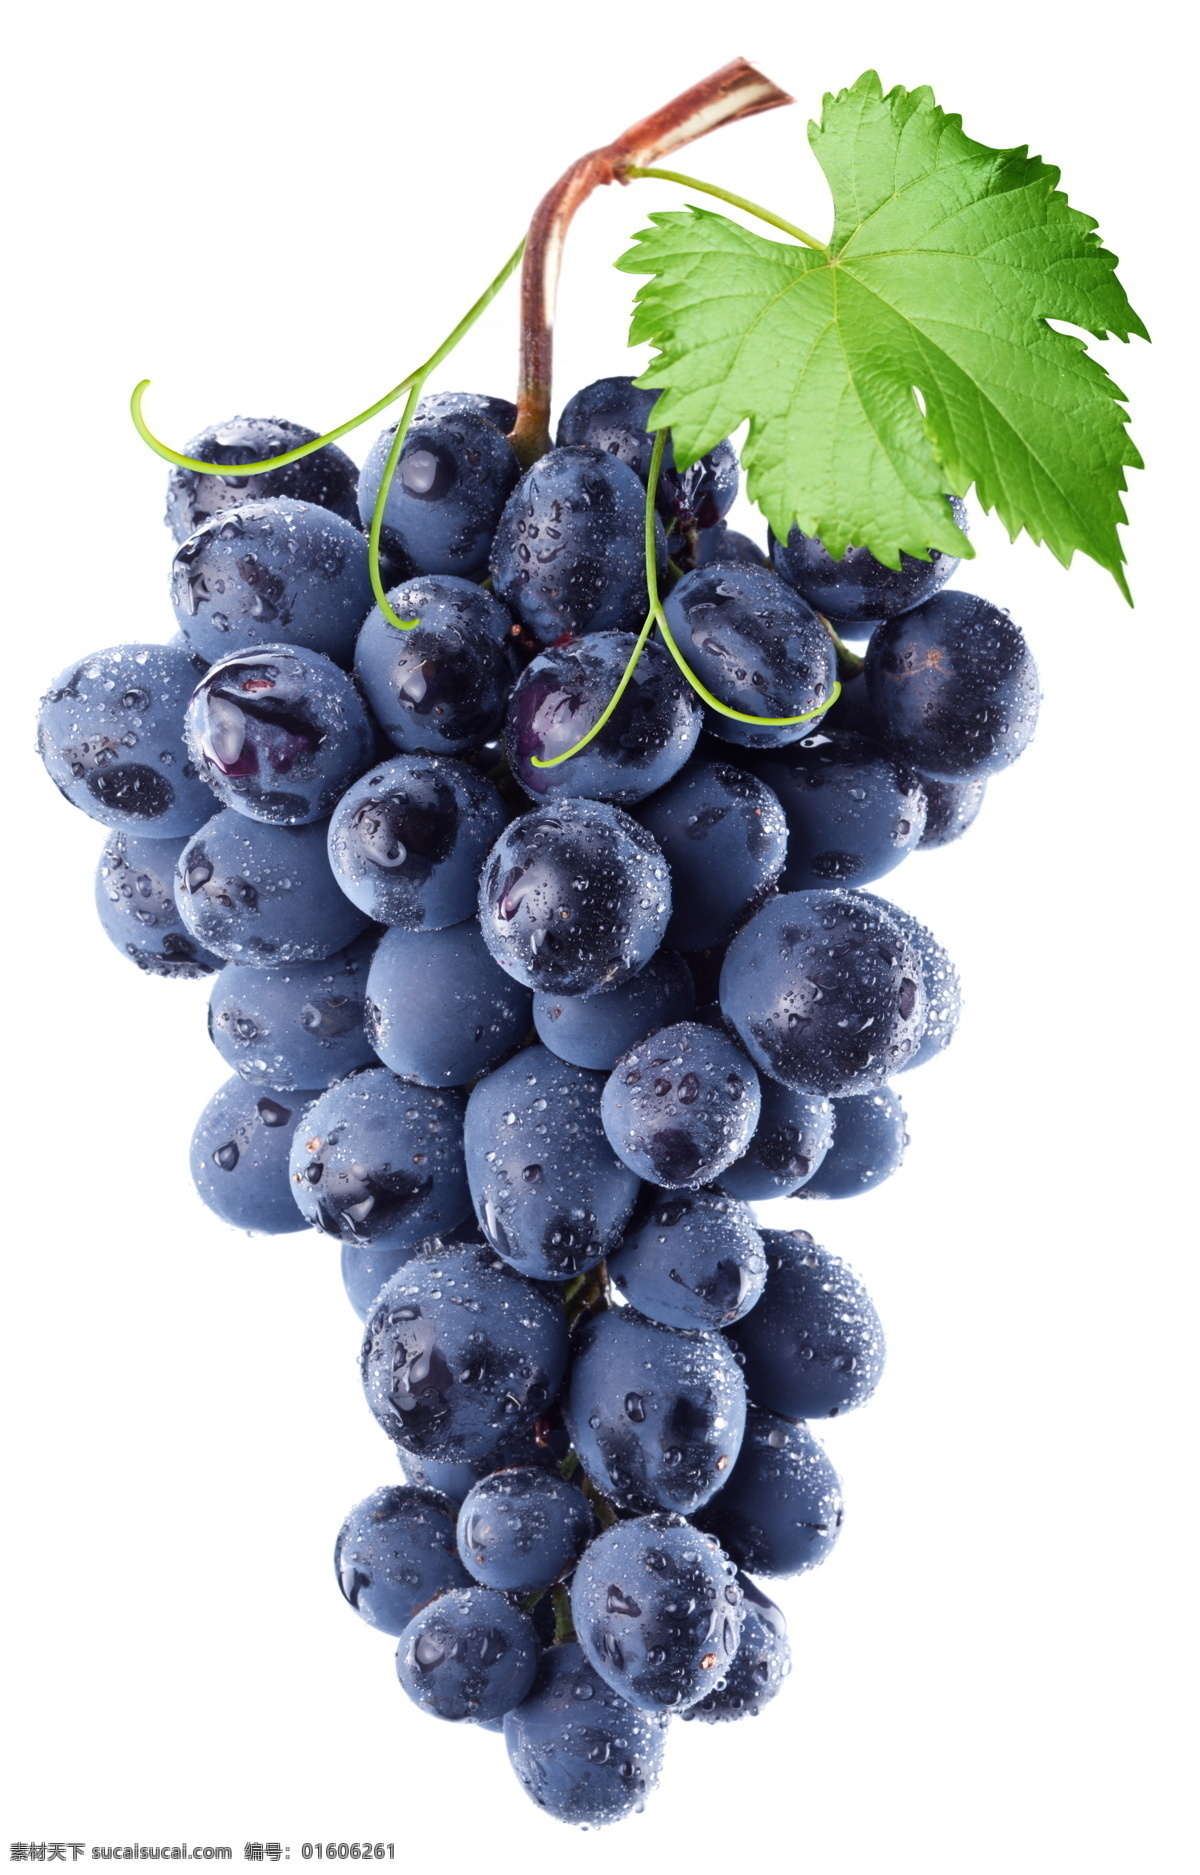 紫色 成熟 葡萄 成熟葡萄 紫葡萄 果实 果子 水果 新鲜水果 水果背景 水果图片 餐饮美食